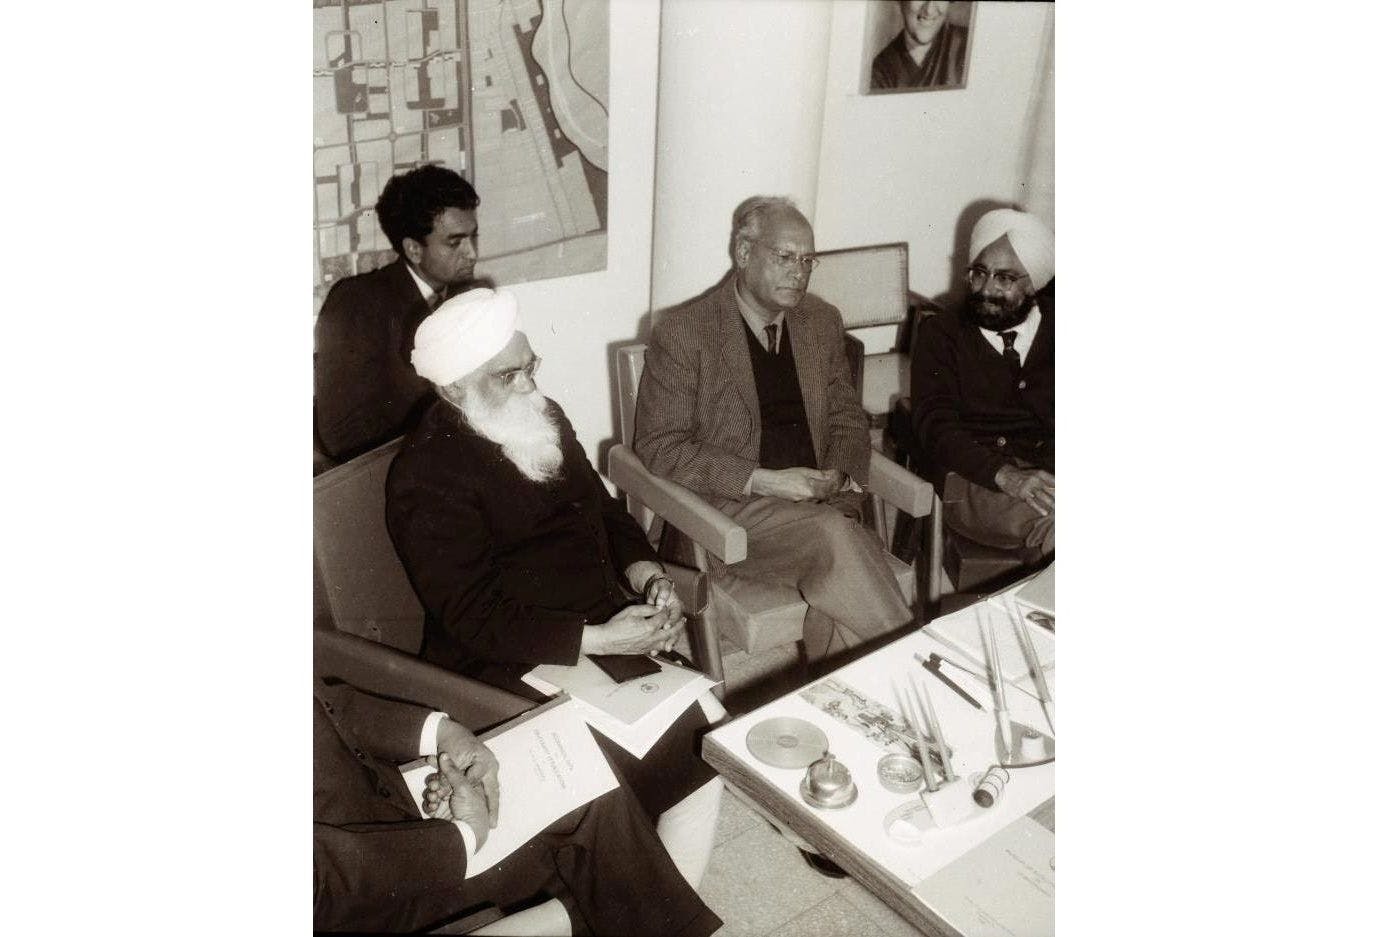 A rare photo of Shaiv Kumar Batalvi, Gurbaksh Singh, MS Randhawa and Khushwant Singh